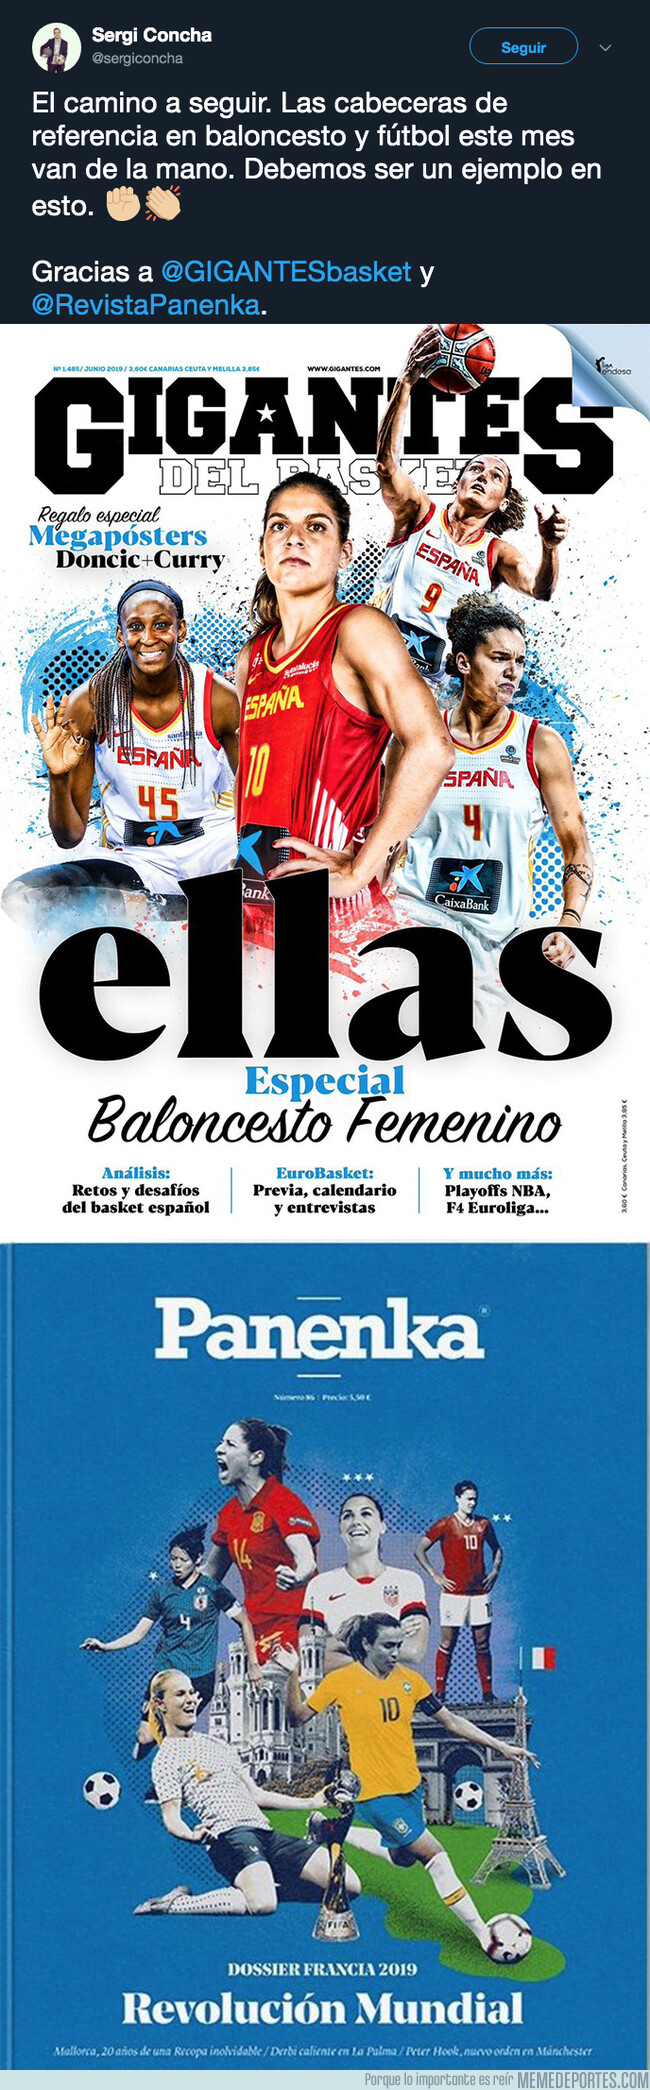 1077283 - Las maravillosas portadas de 'Gigantes del Basket' y 'Panenka' a favor del deporte femenino